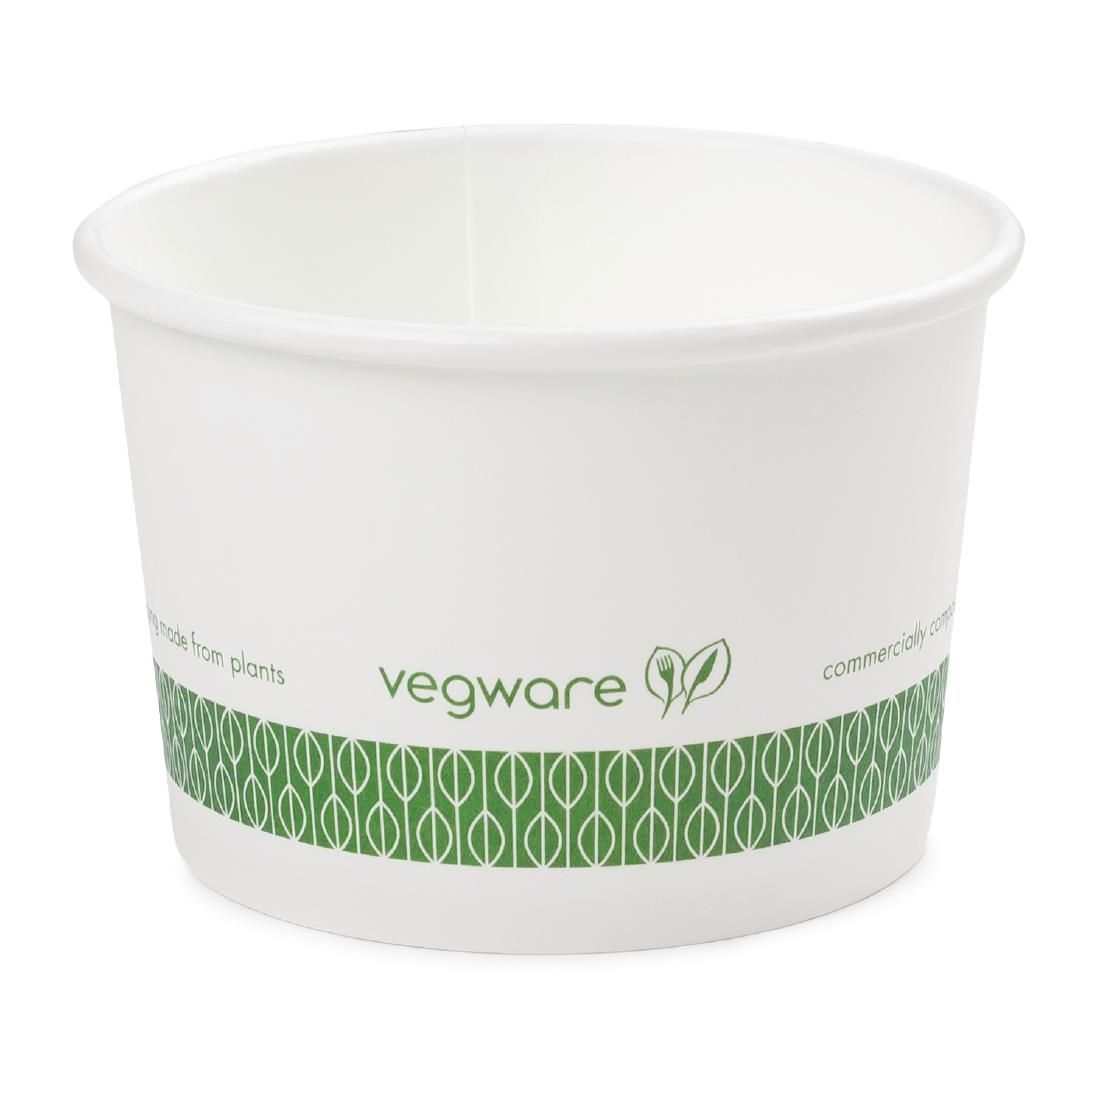 Vegware Compostable Hot Food Pots 230ml / 8oz (Pack of 1000) - GH027 Condiment Pots & Soup Cups Vegware   